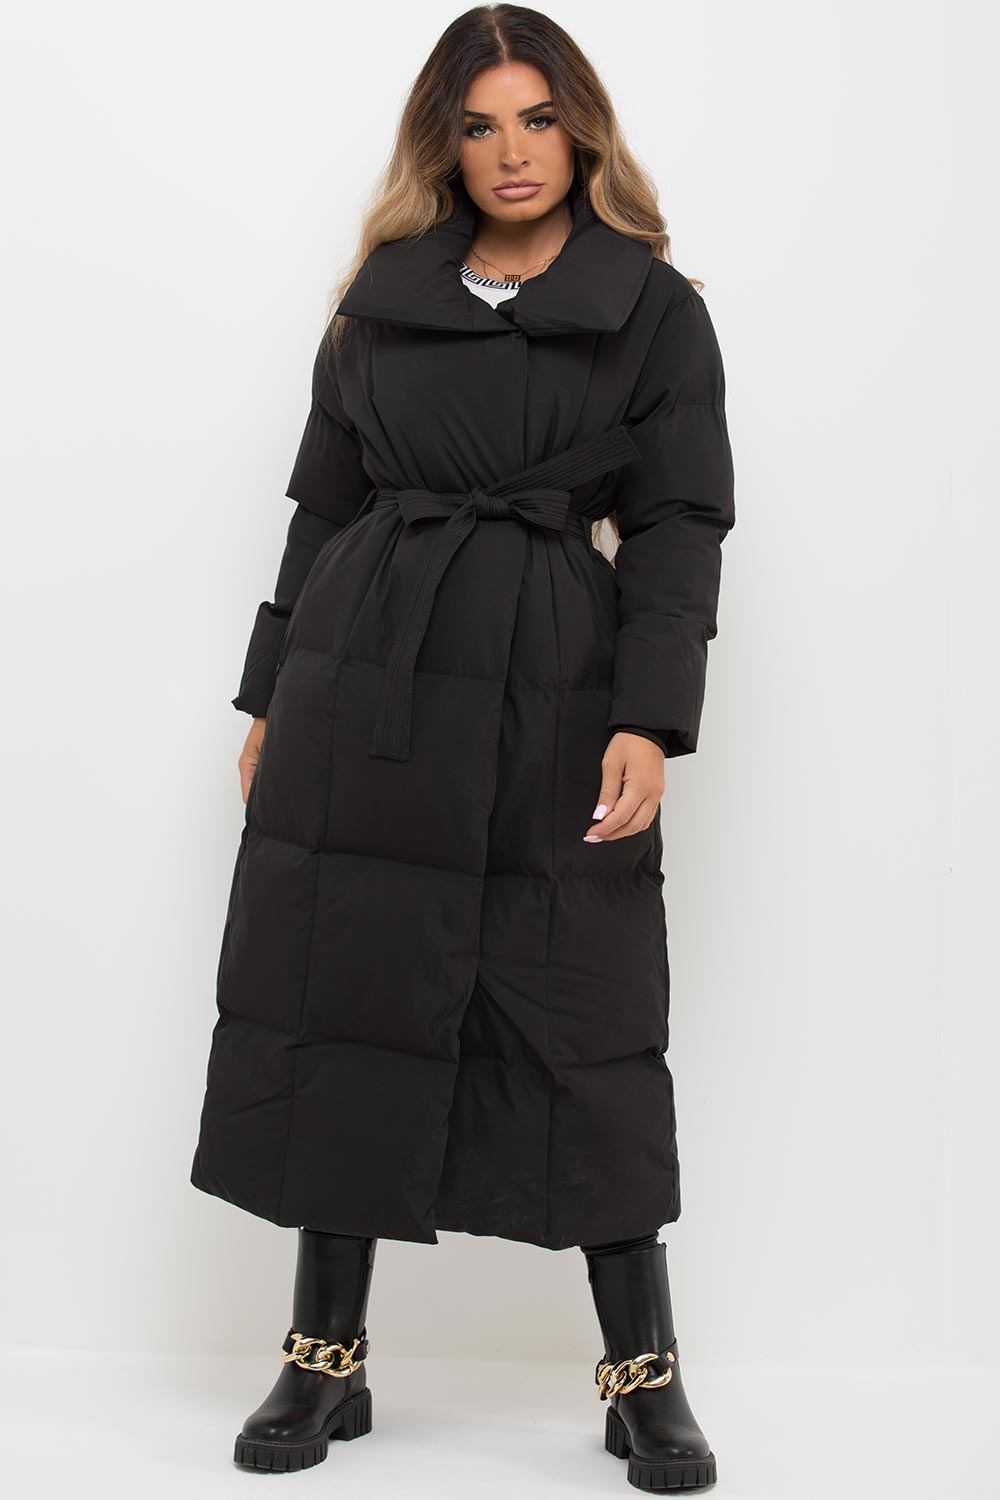 long black padded puffer duvet coat